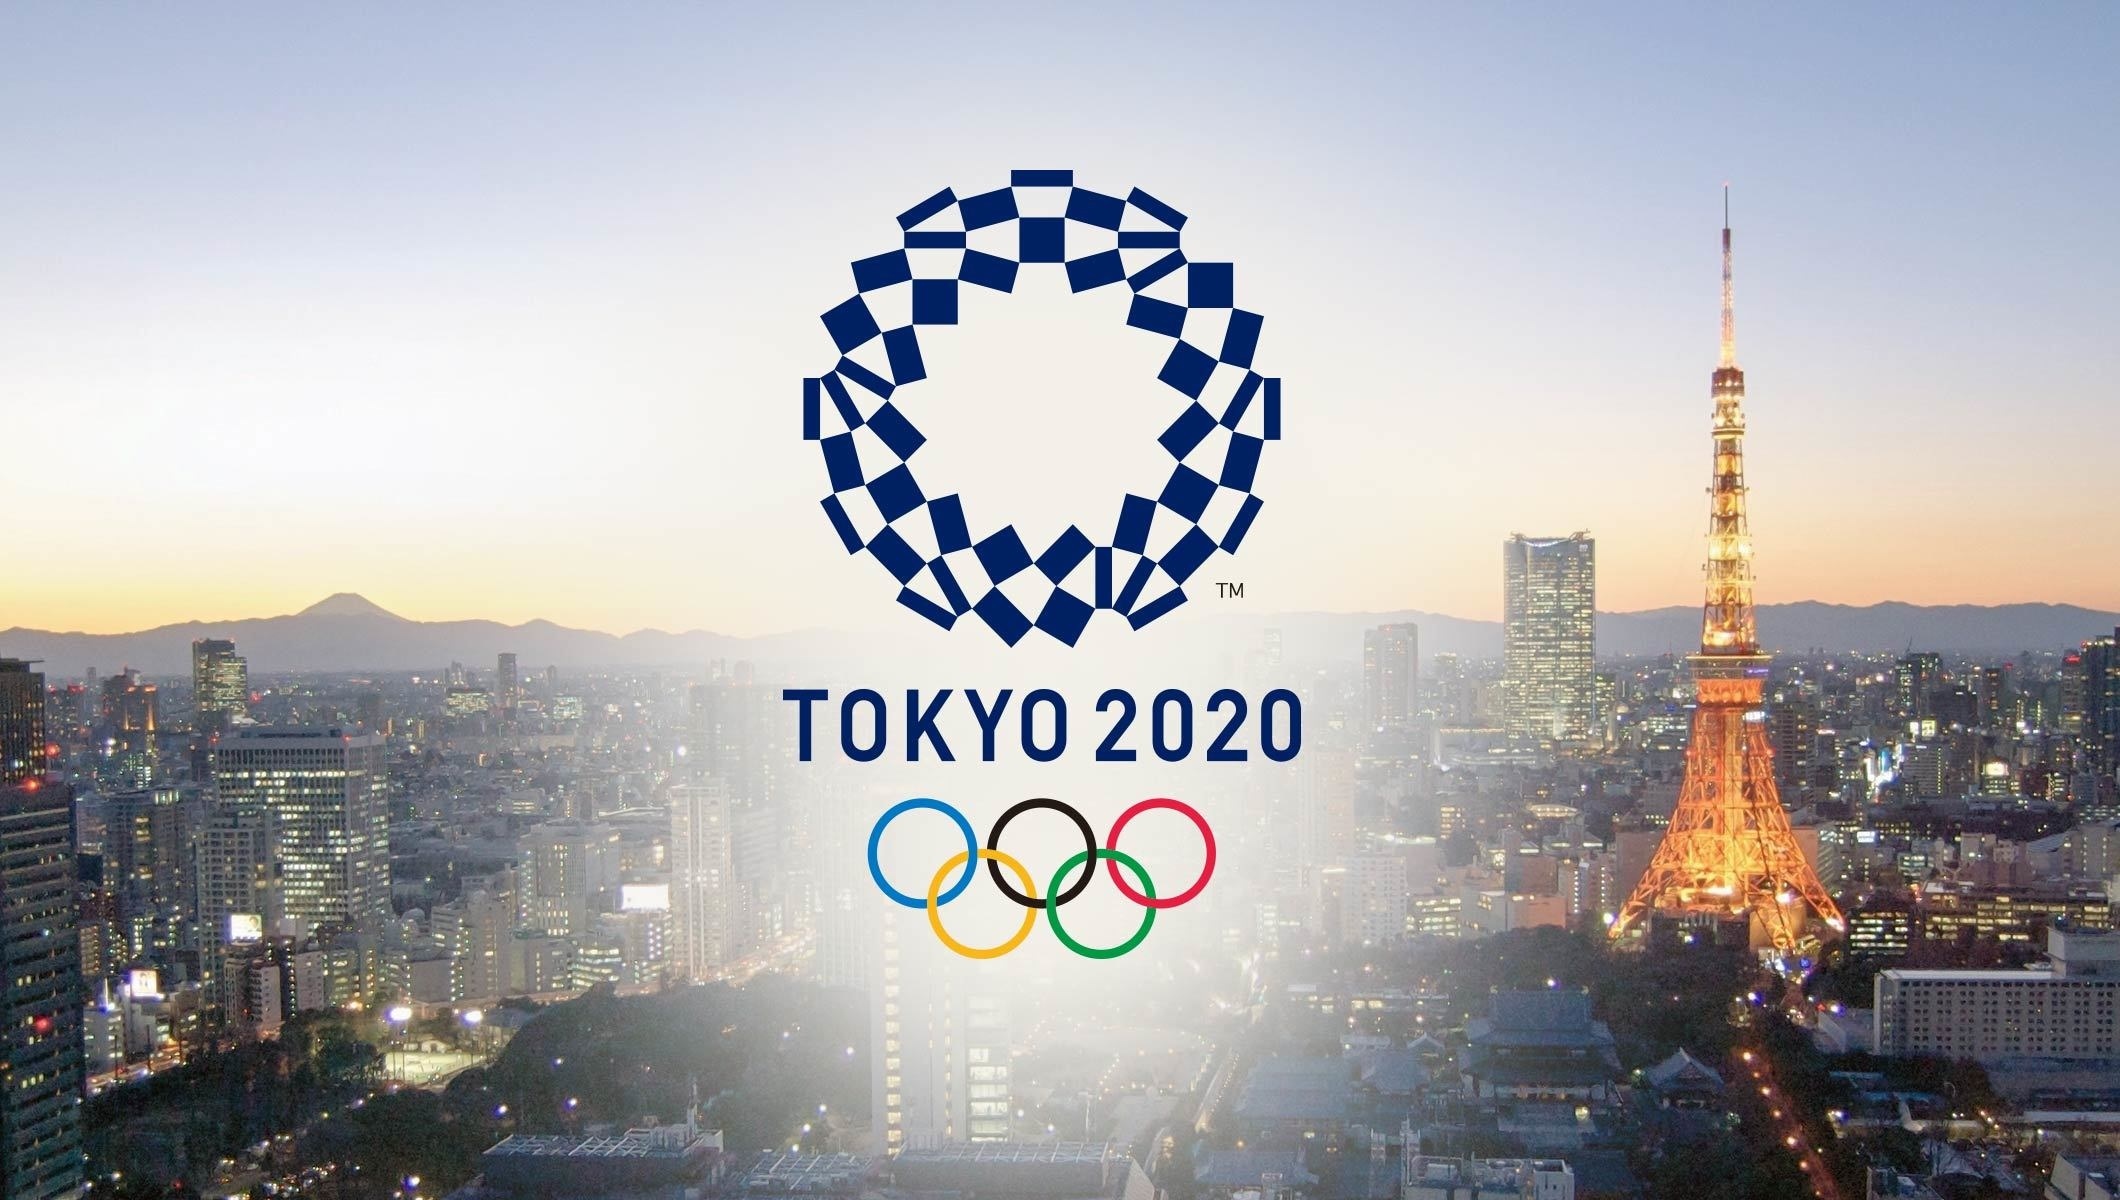   رئيس ووزراء اليابان يطالب بالنظر فى تأجيل أولمبياد طوكيو